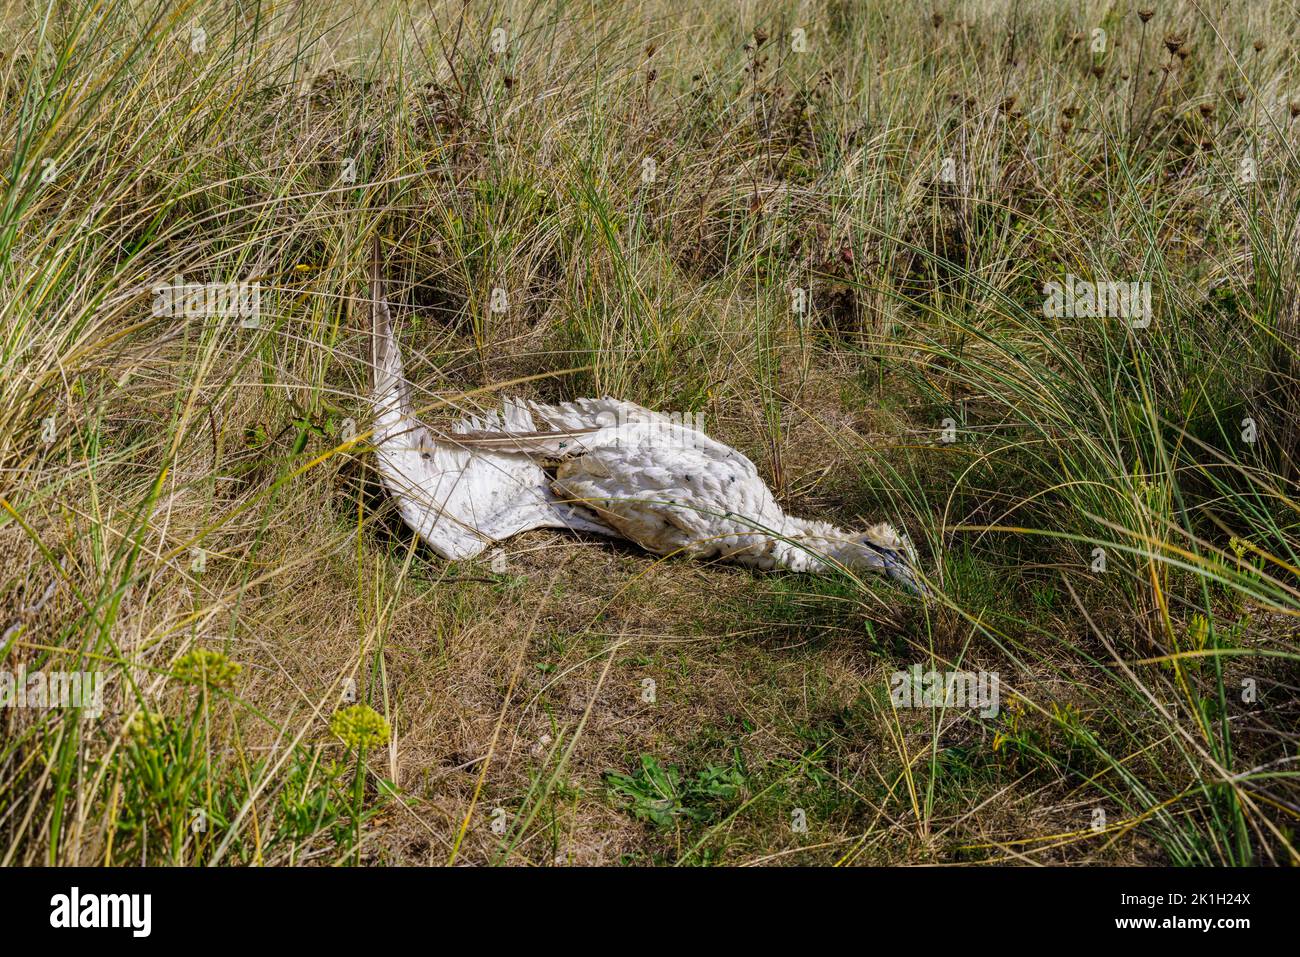 Le corps d'un oiseau de mer mort, un gantet du nord (Morus bassanus), sur une plage de Cornwall, dans l'ouest de l'Angleterre, probablement victime de l'influenza aviaire (grippe aviaire) Banque D'Images